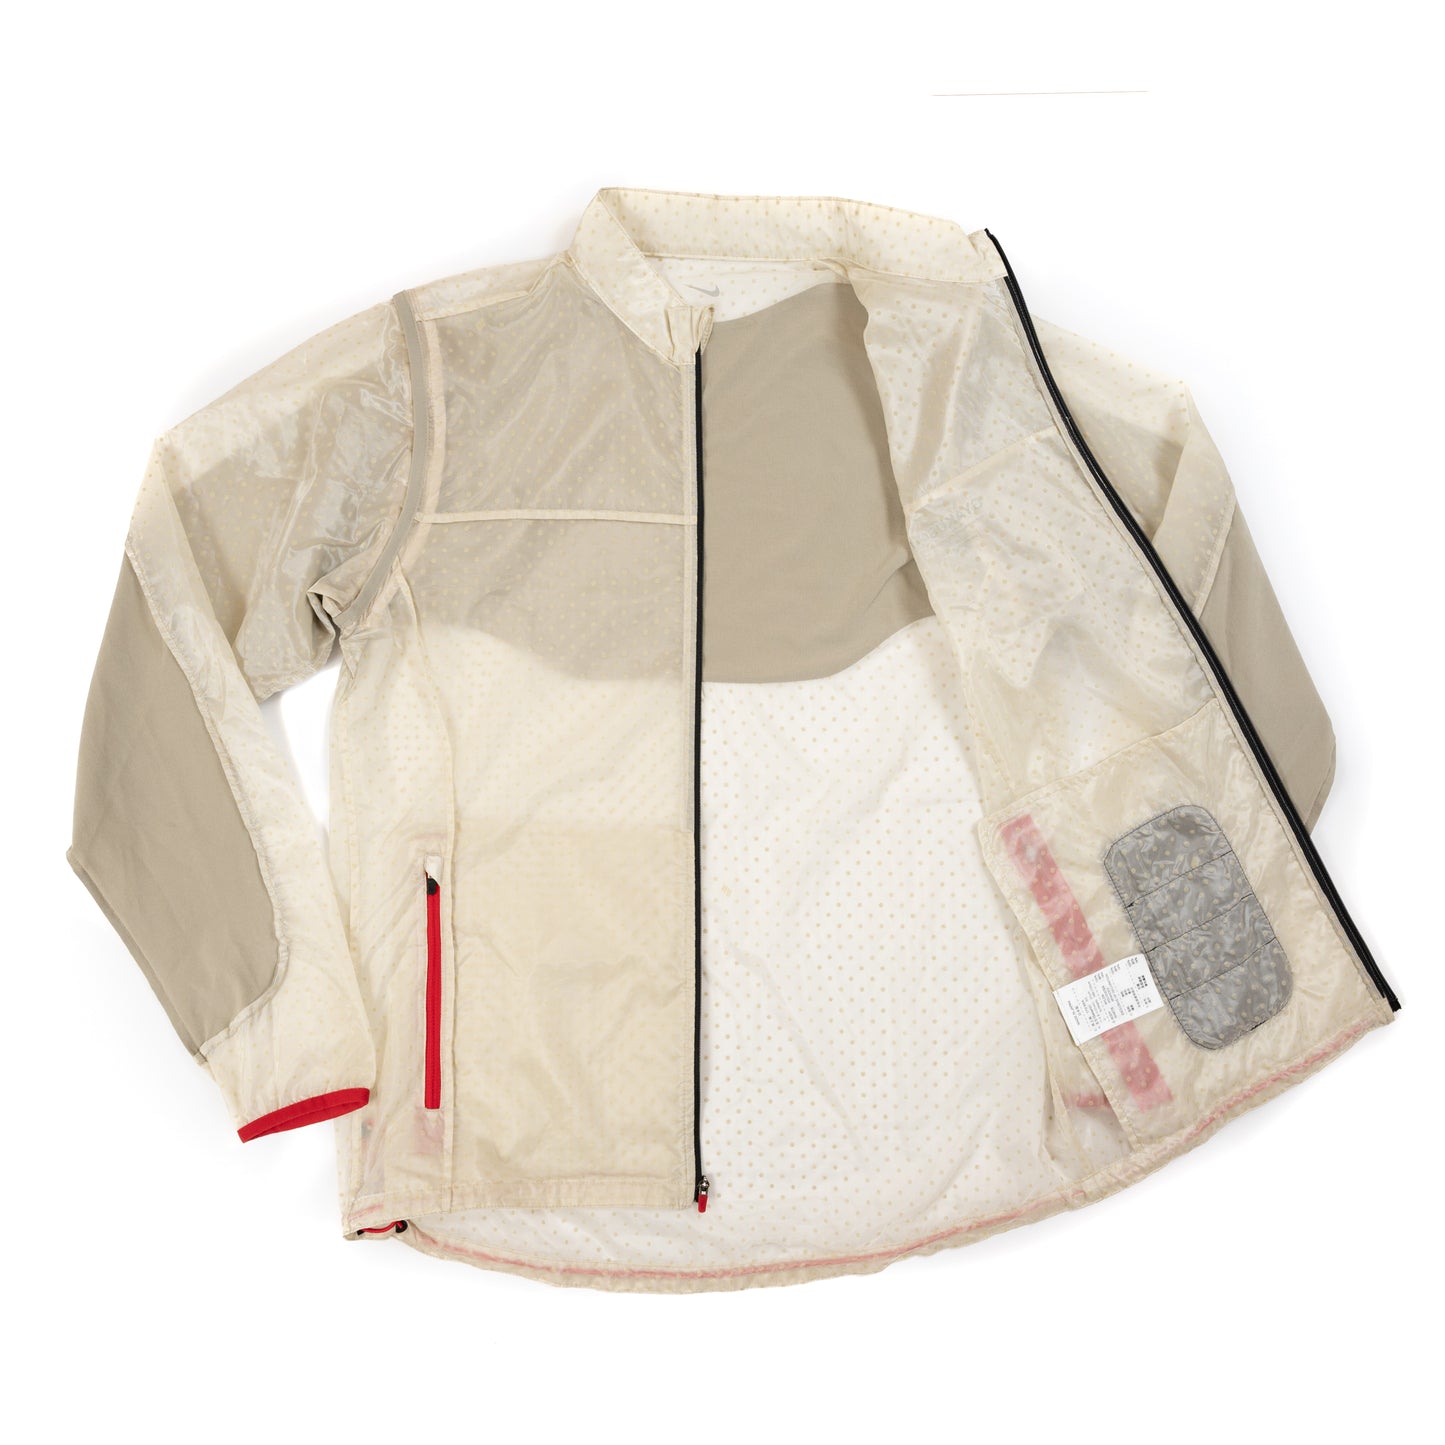 Undercover x Nike Gyakusou Convertible 2-Way Jacket (2011SS)